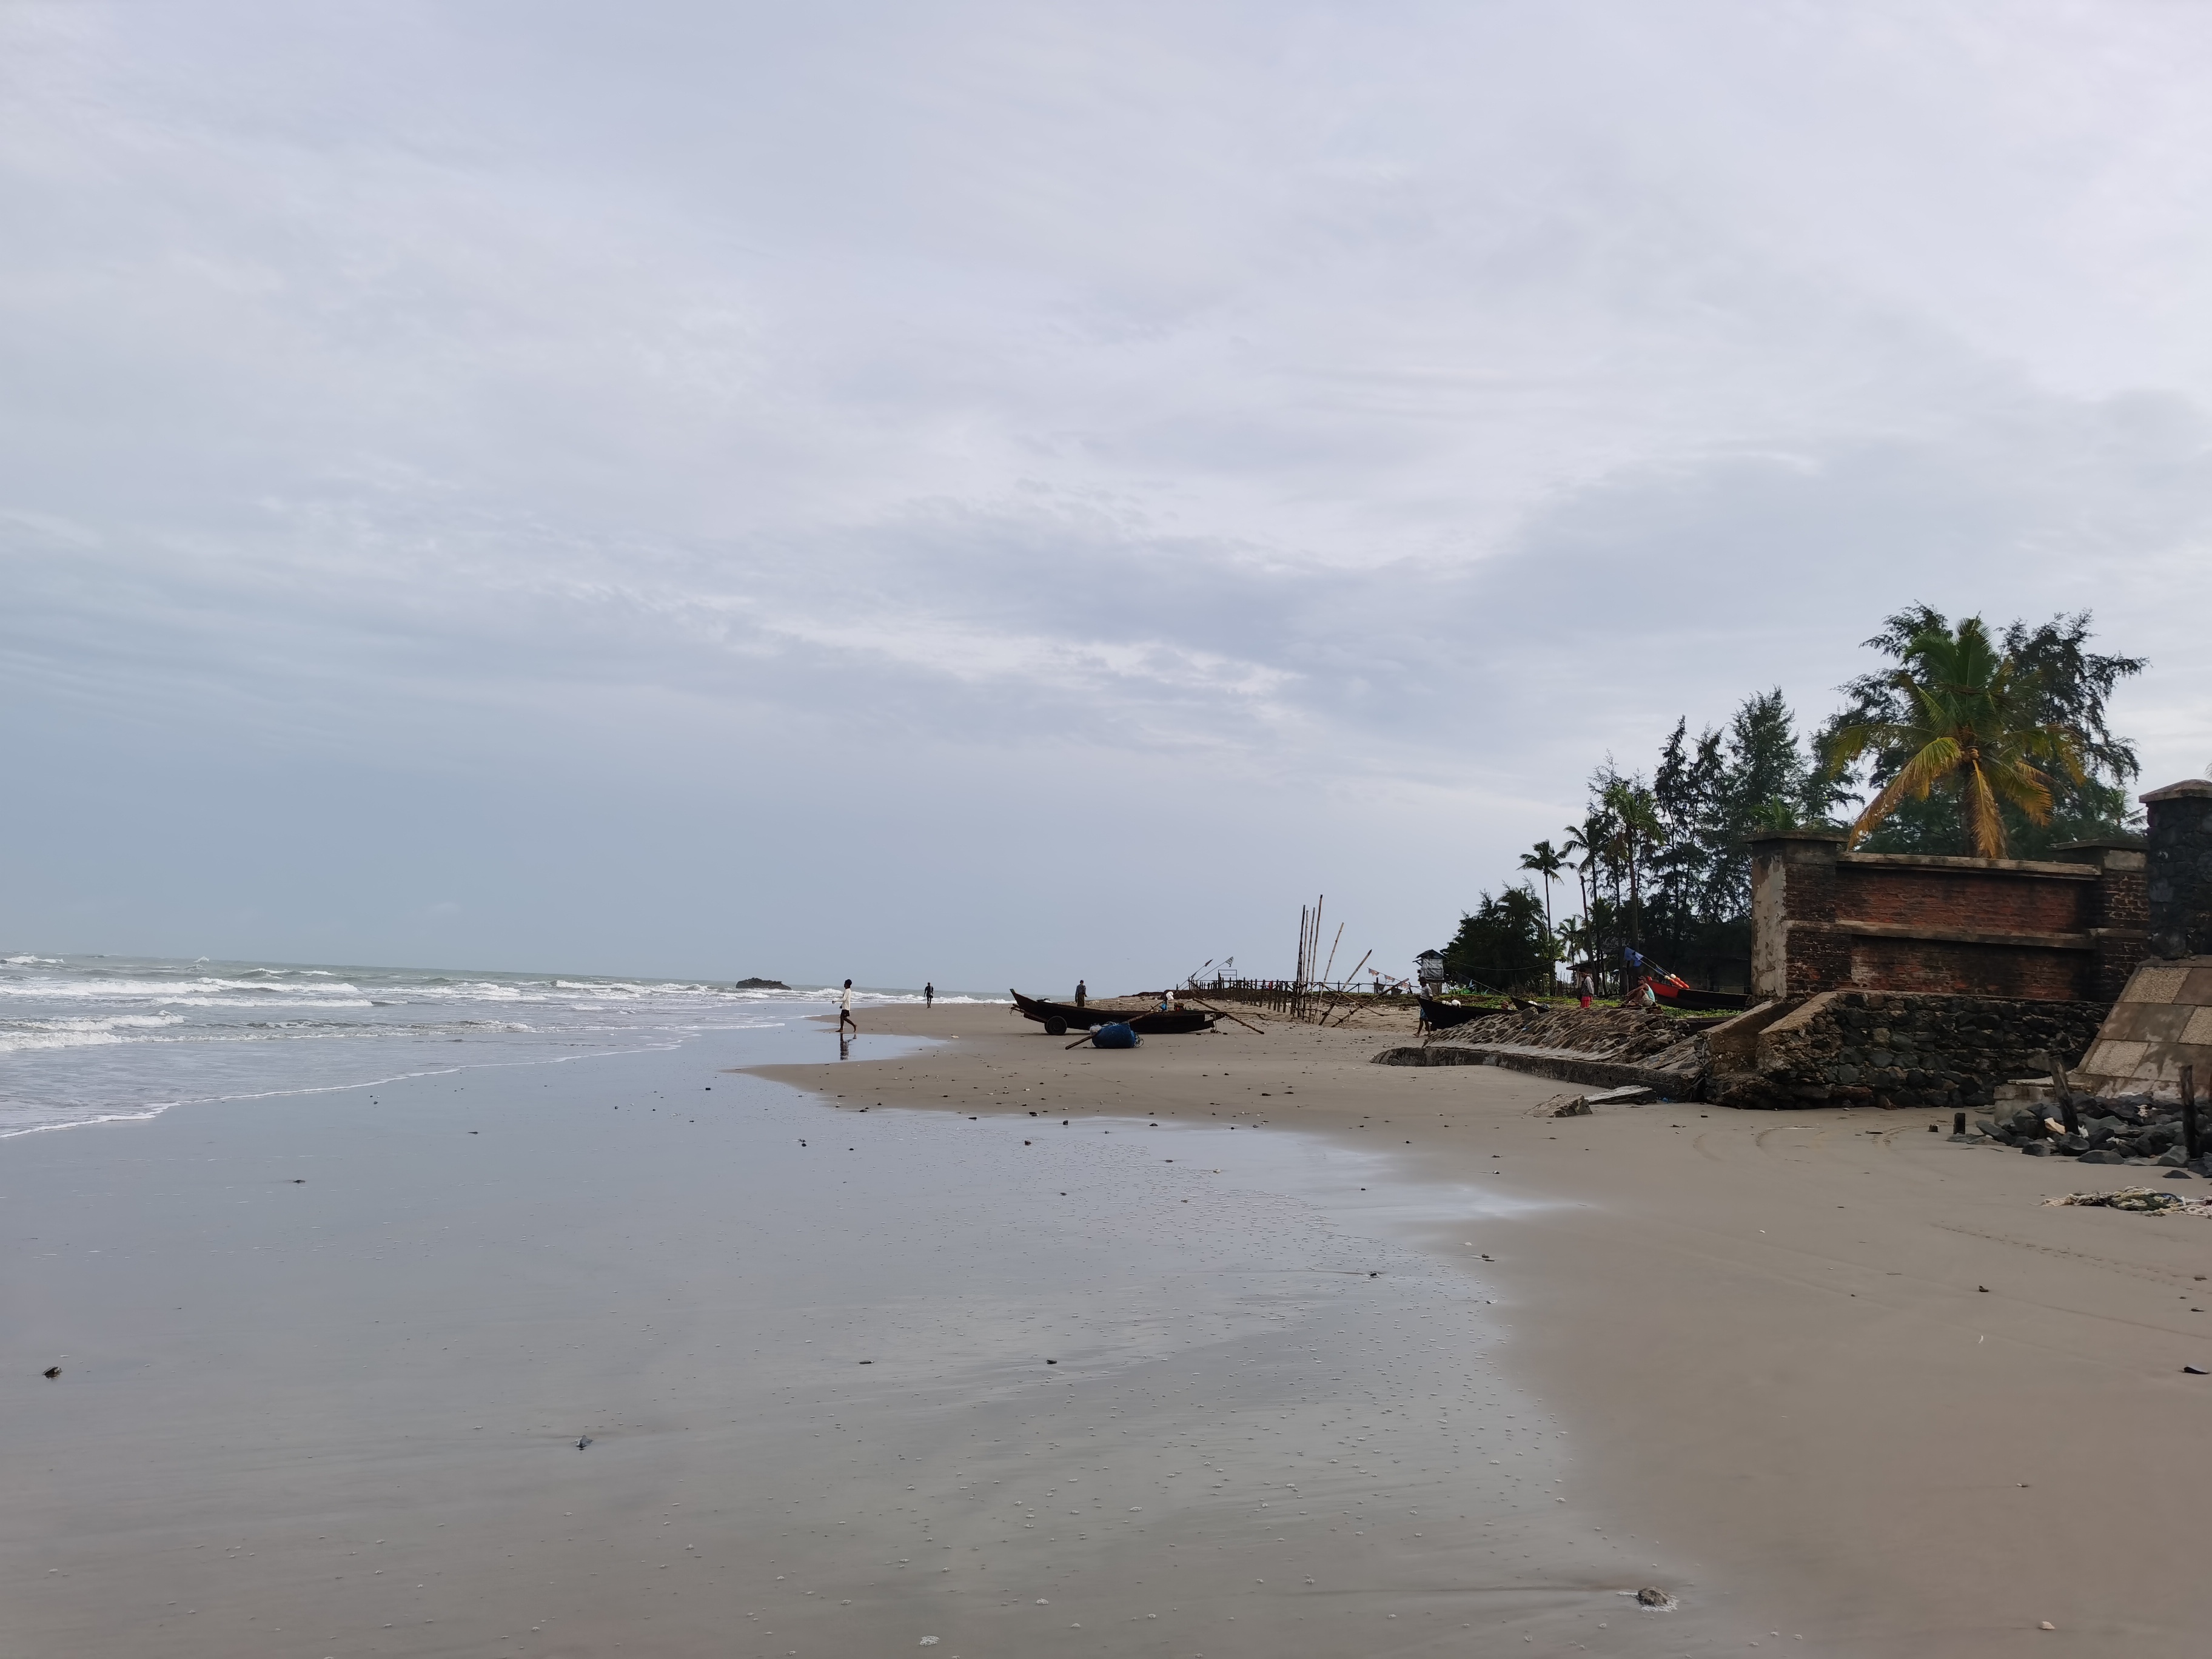 缅甸的维桑海滩(ngwesaung beach),性价比应该比泰国的要高